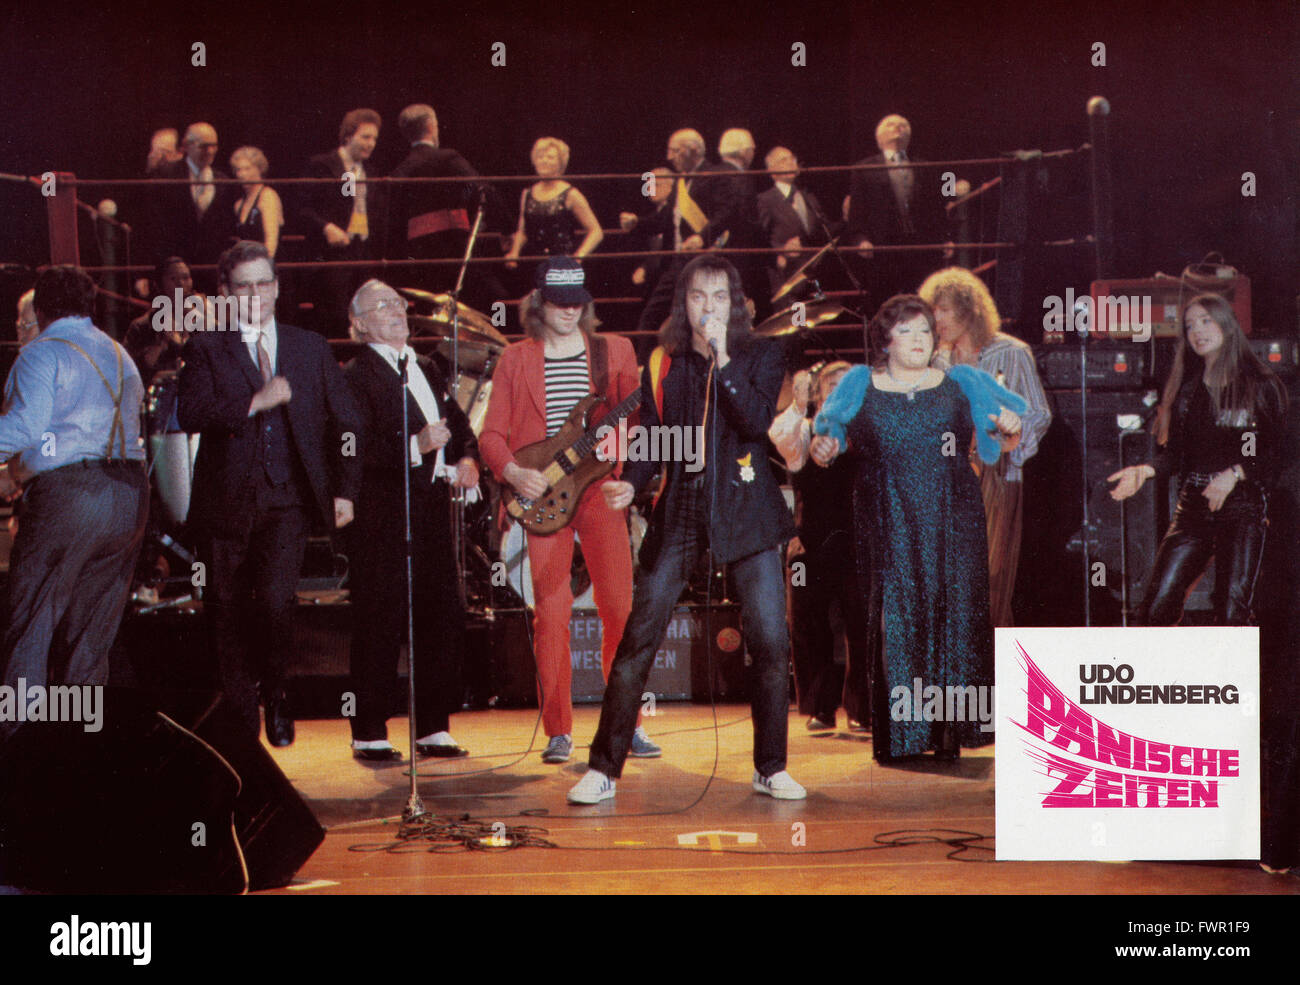 Panische Zeiten, Deutschland 1980, Regie: Peter Fratzscher, Udo Lindenberg,  Darsteller: Udo Lindenberg in concert ohne Hut Stock Photo - Alamy